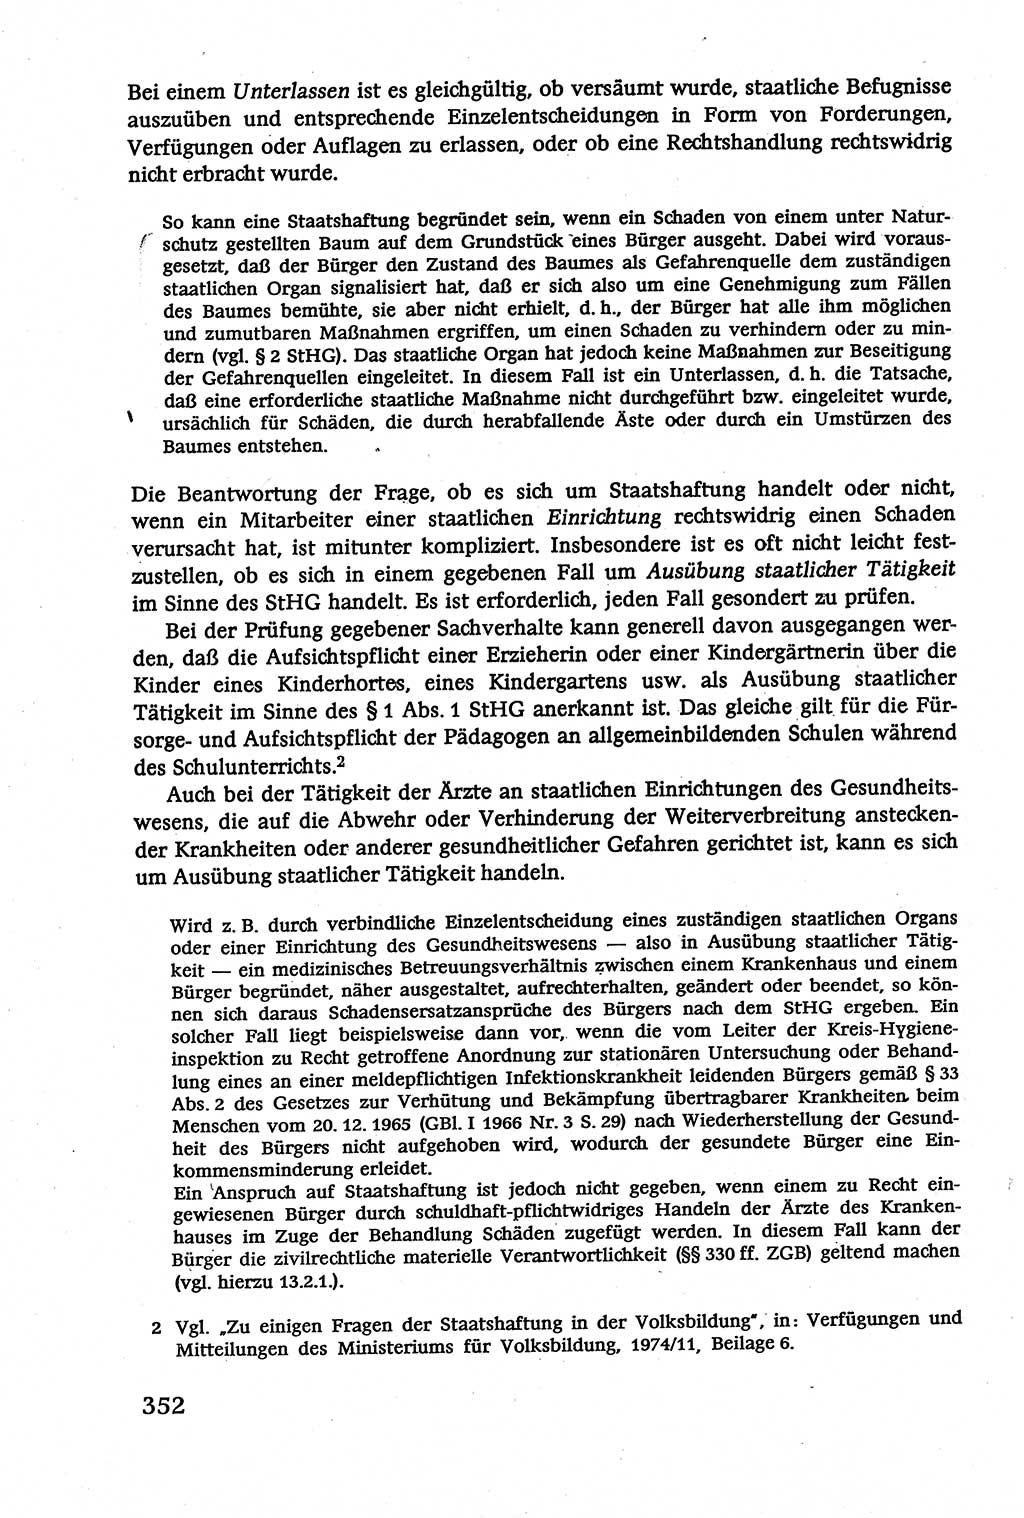 Verwaltungsrecht [Deutsche Demokratische Republik (DDR)], Lehrbuch 1979, Seite 352 (Verw.-R. DDR Lb. 1979, S. 352)